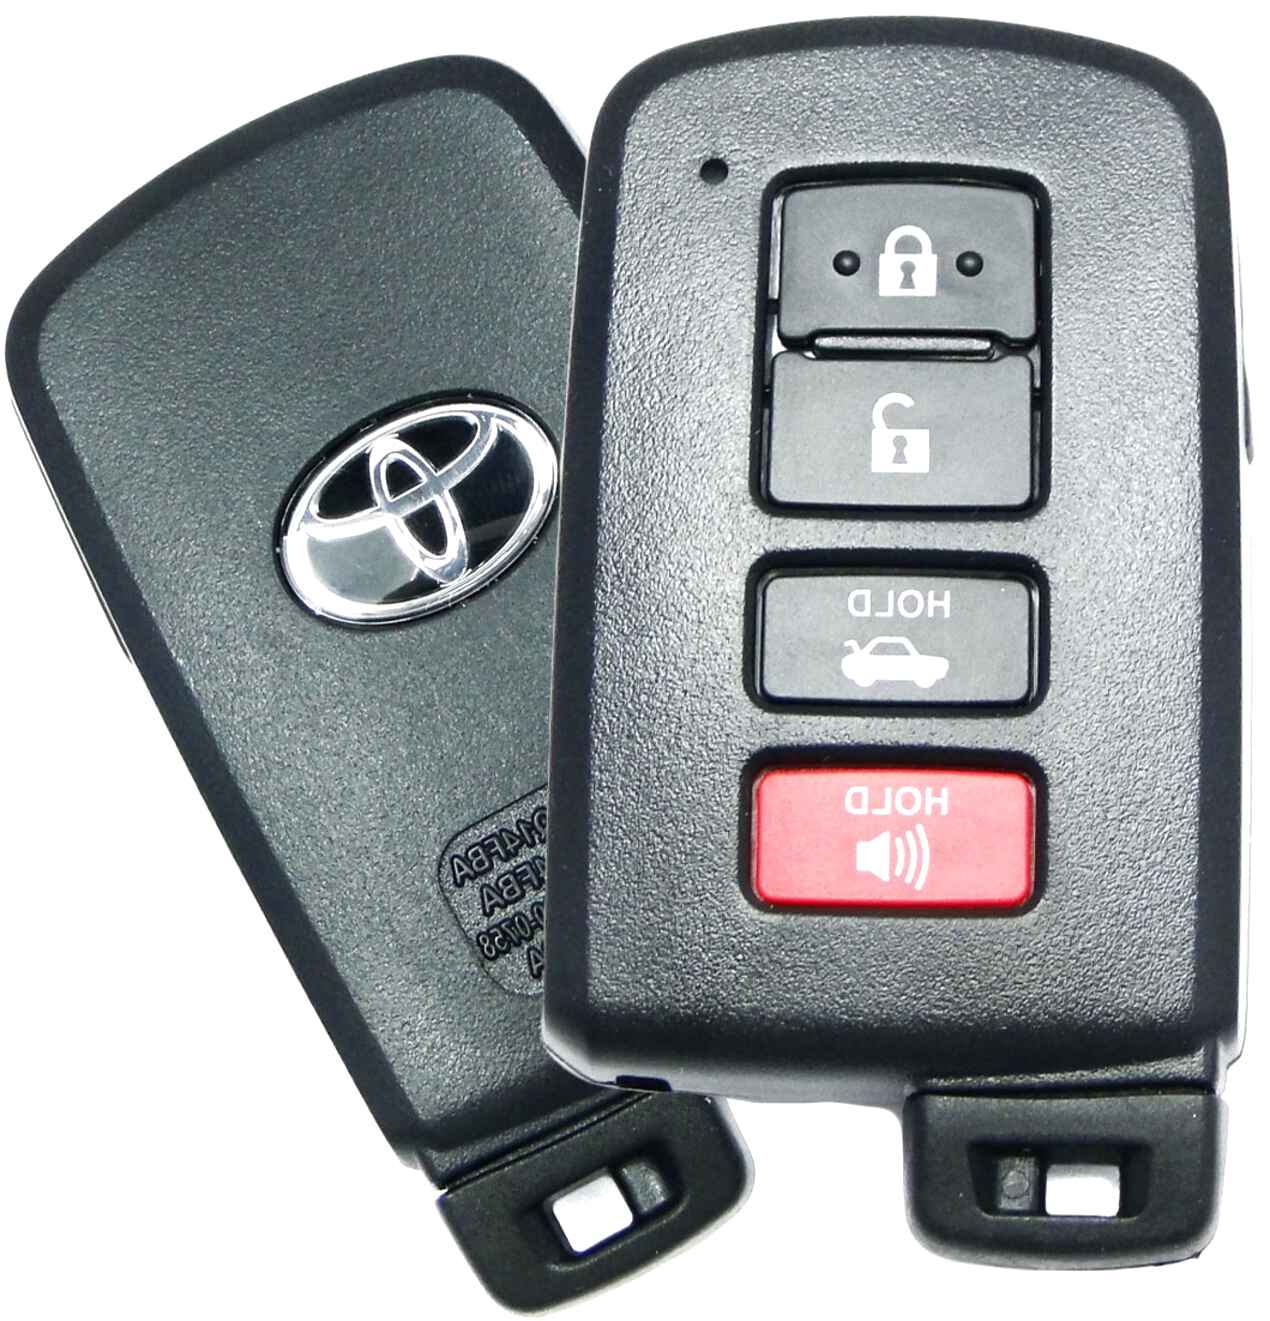 Installing Keyless Entry Toyota Yaris